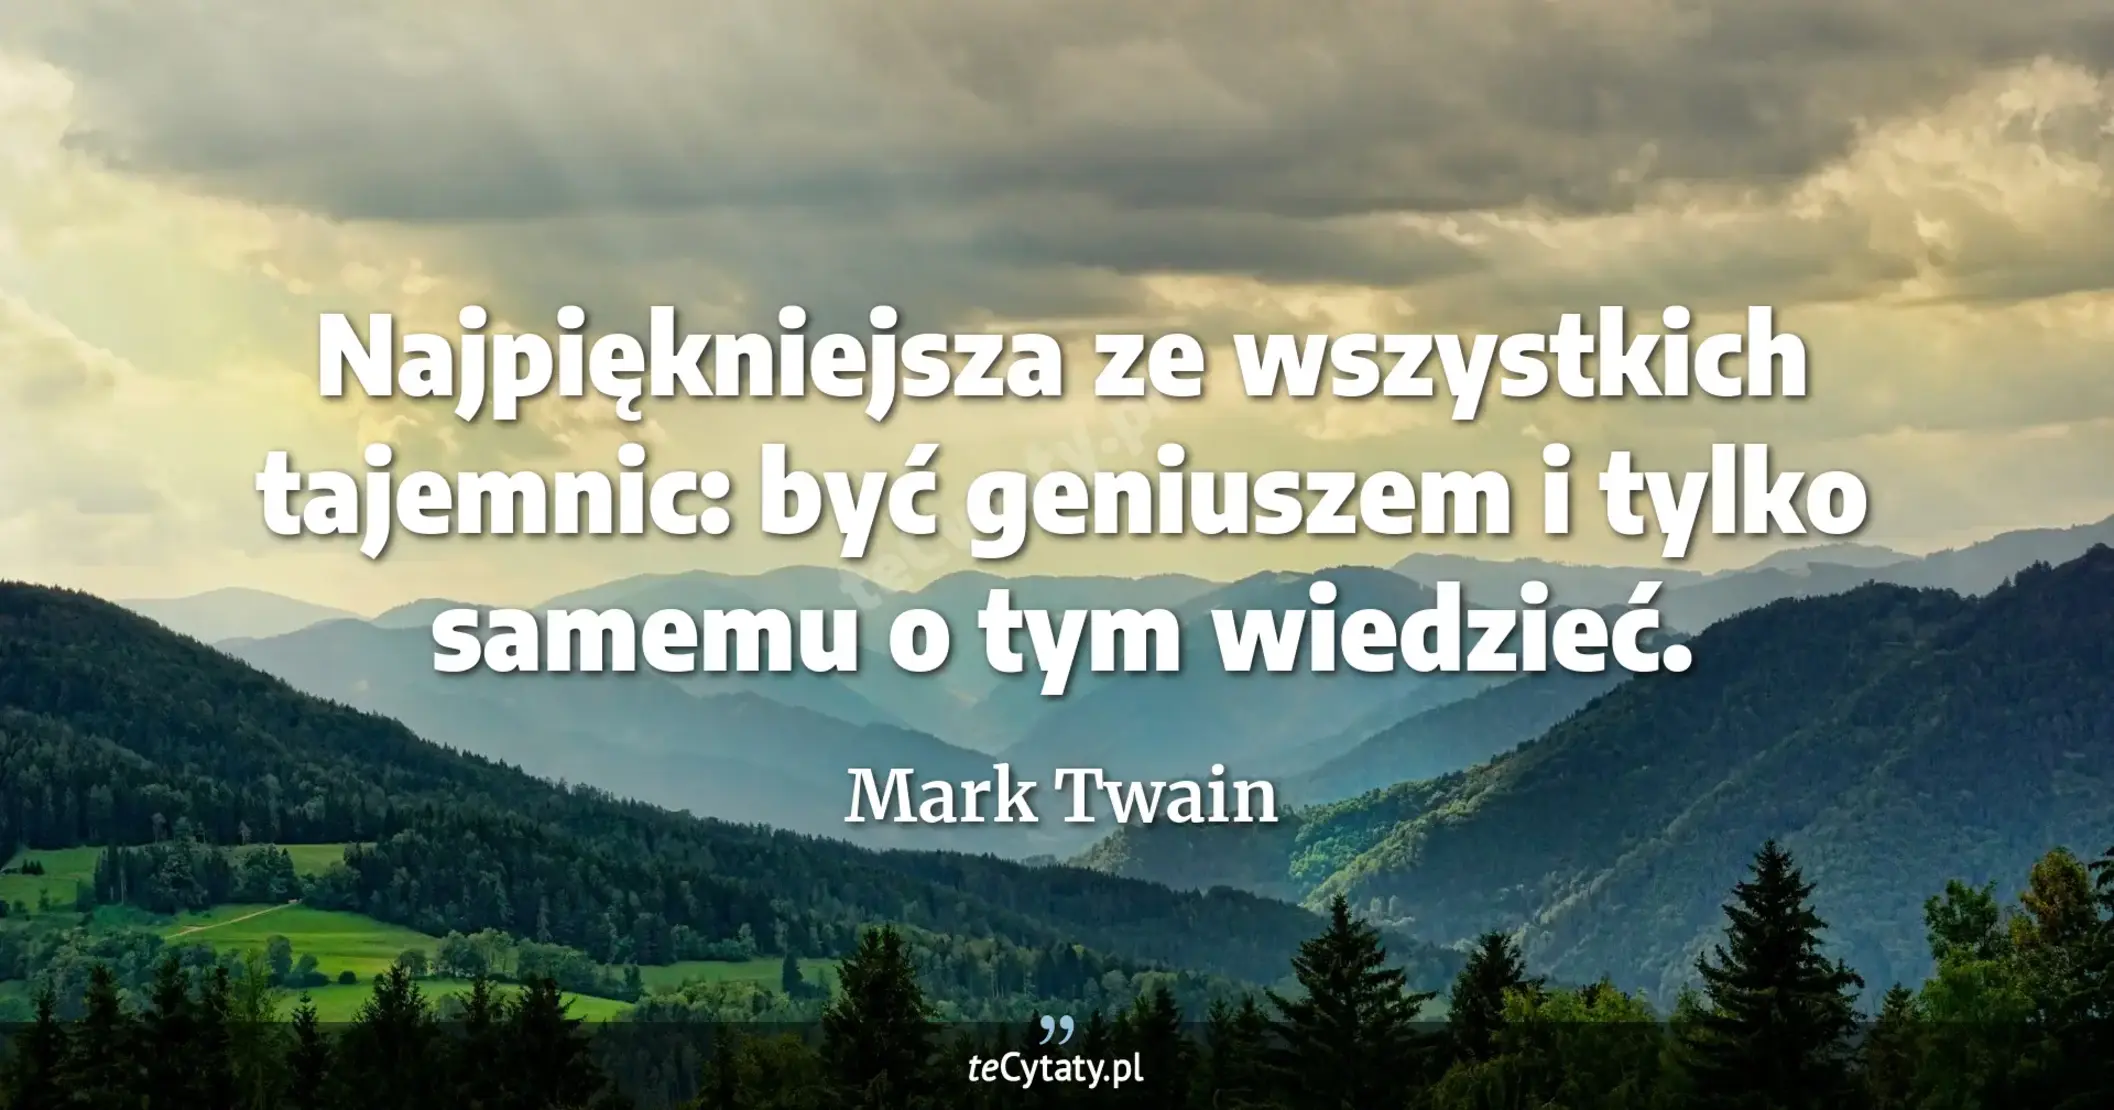 Najpiękniejsza ze wszystkich tajemnic: być geniuszem i tylko samemu o tym wiedzieć. - Mark Twain